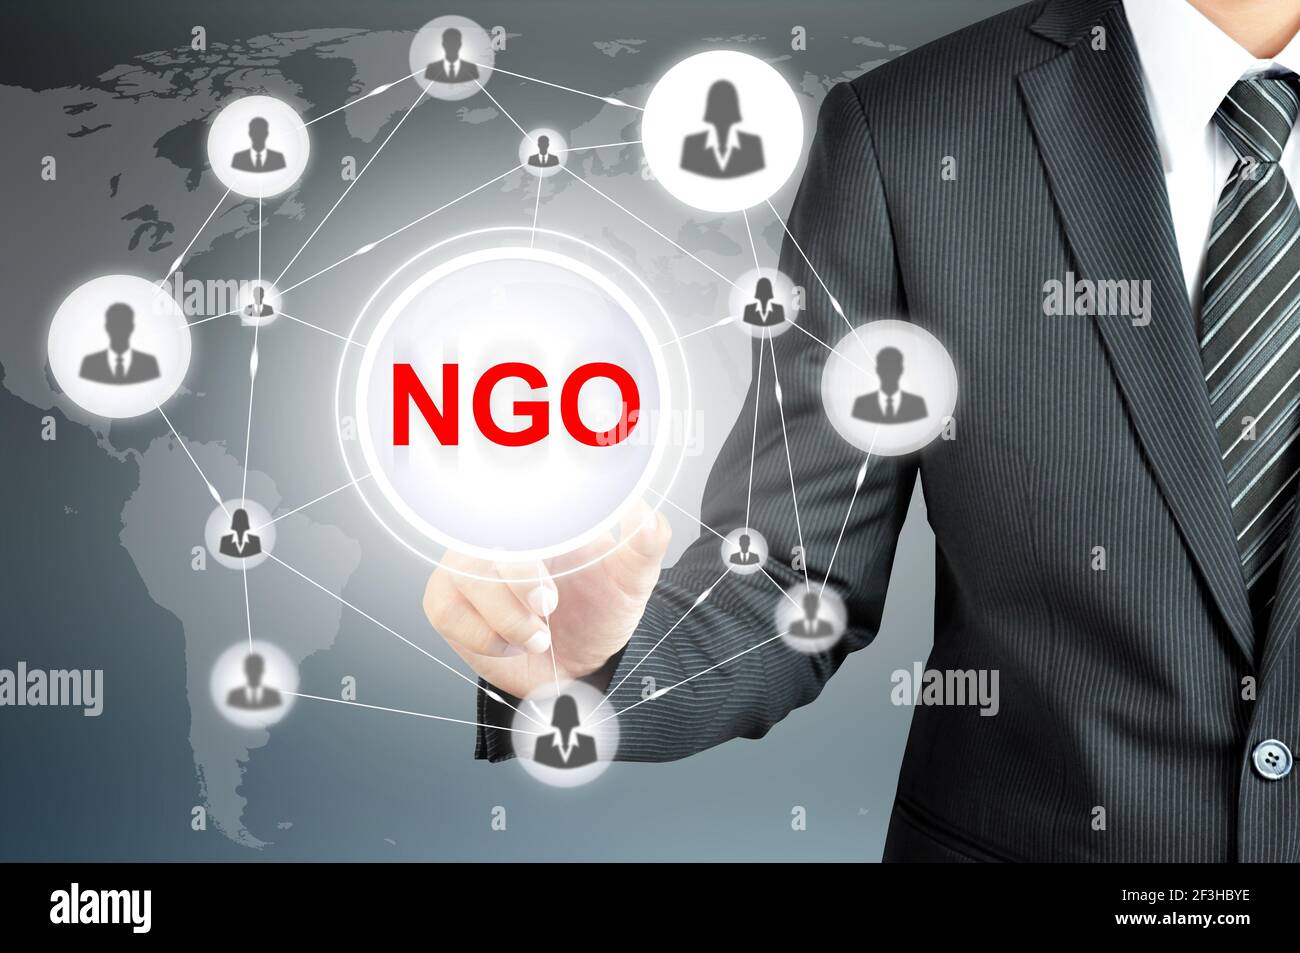 Geschäftsmann verweist auf NGO (Non-Governmental Organisation) melden Sie sich auf dem virtuellen Bildschirm an, und verwenden Sie Personensymbole, die als Netzwerk verknüpft sind Stockfoto